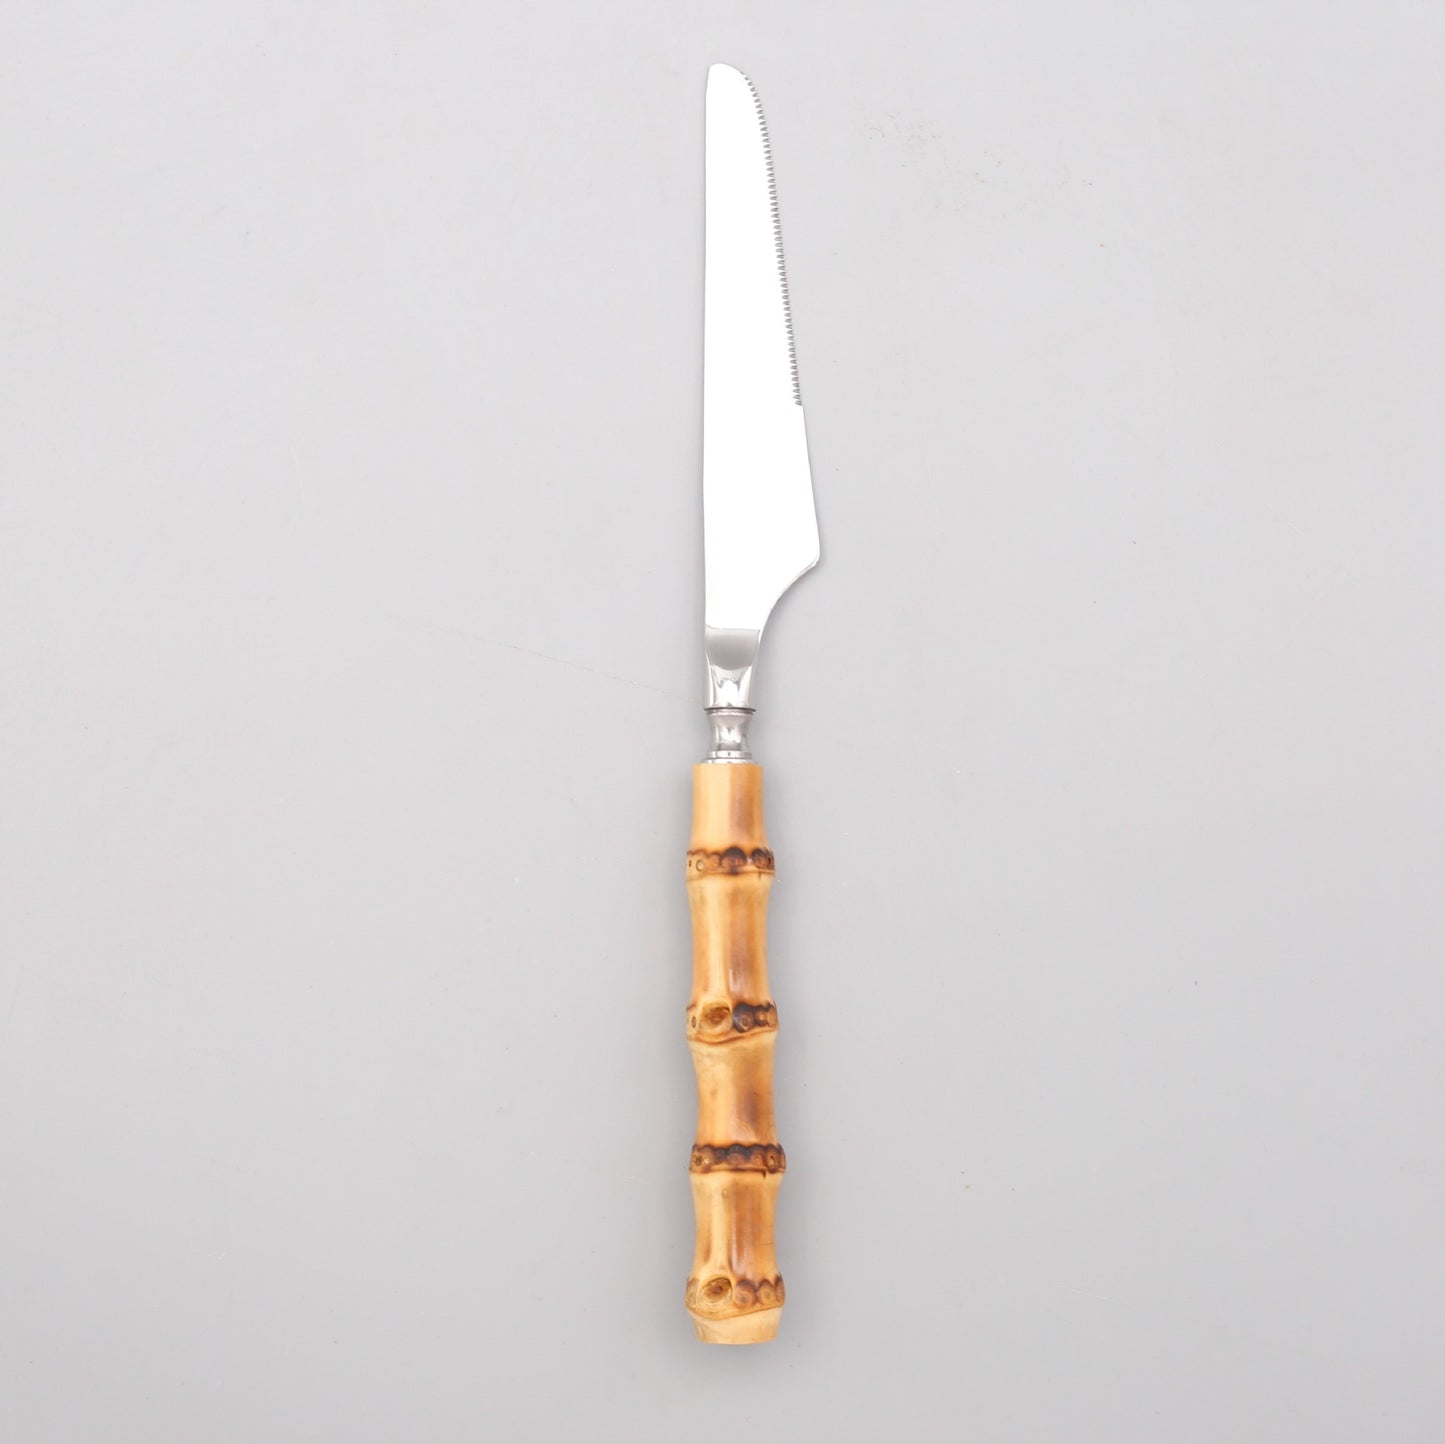 Bamboo Handle Cutlery Set Dinnerware Set 5/20pcs 18/10 Stainless Steel Knife Fork Spoon Tableware Cutleries Sets Drop